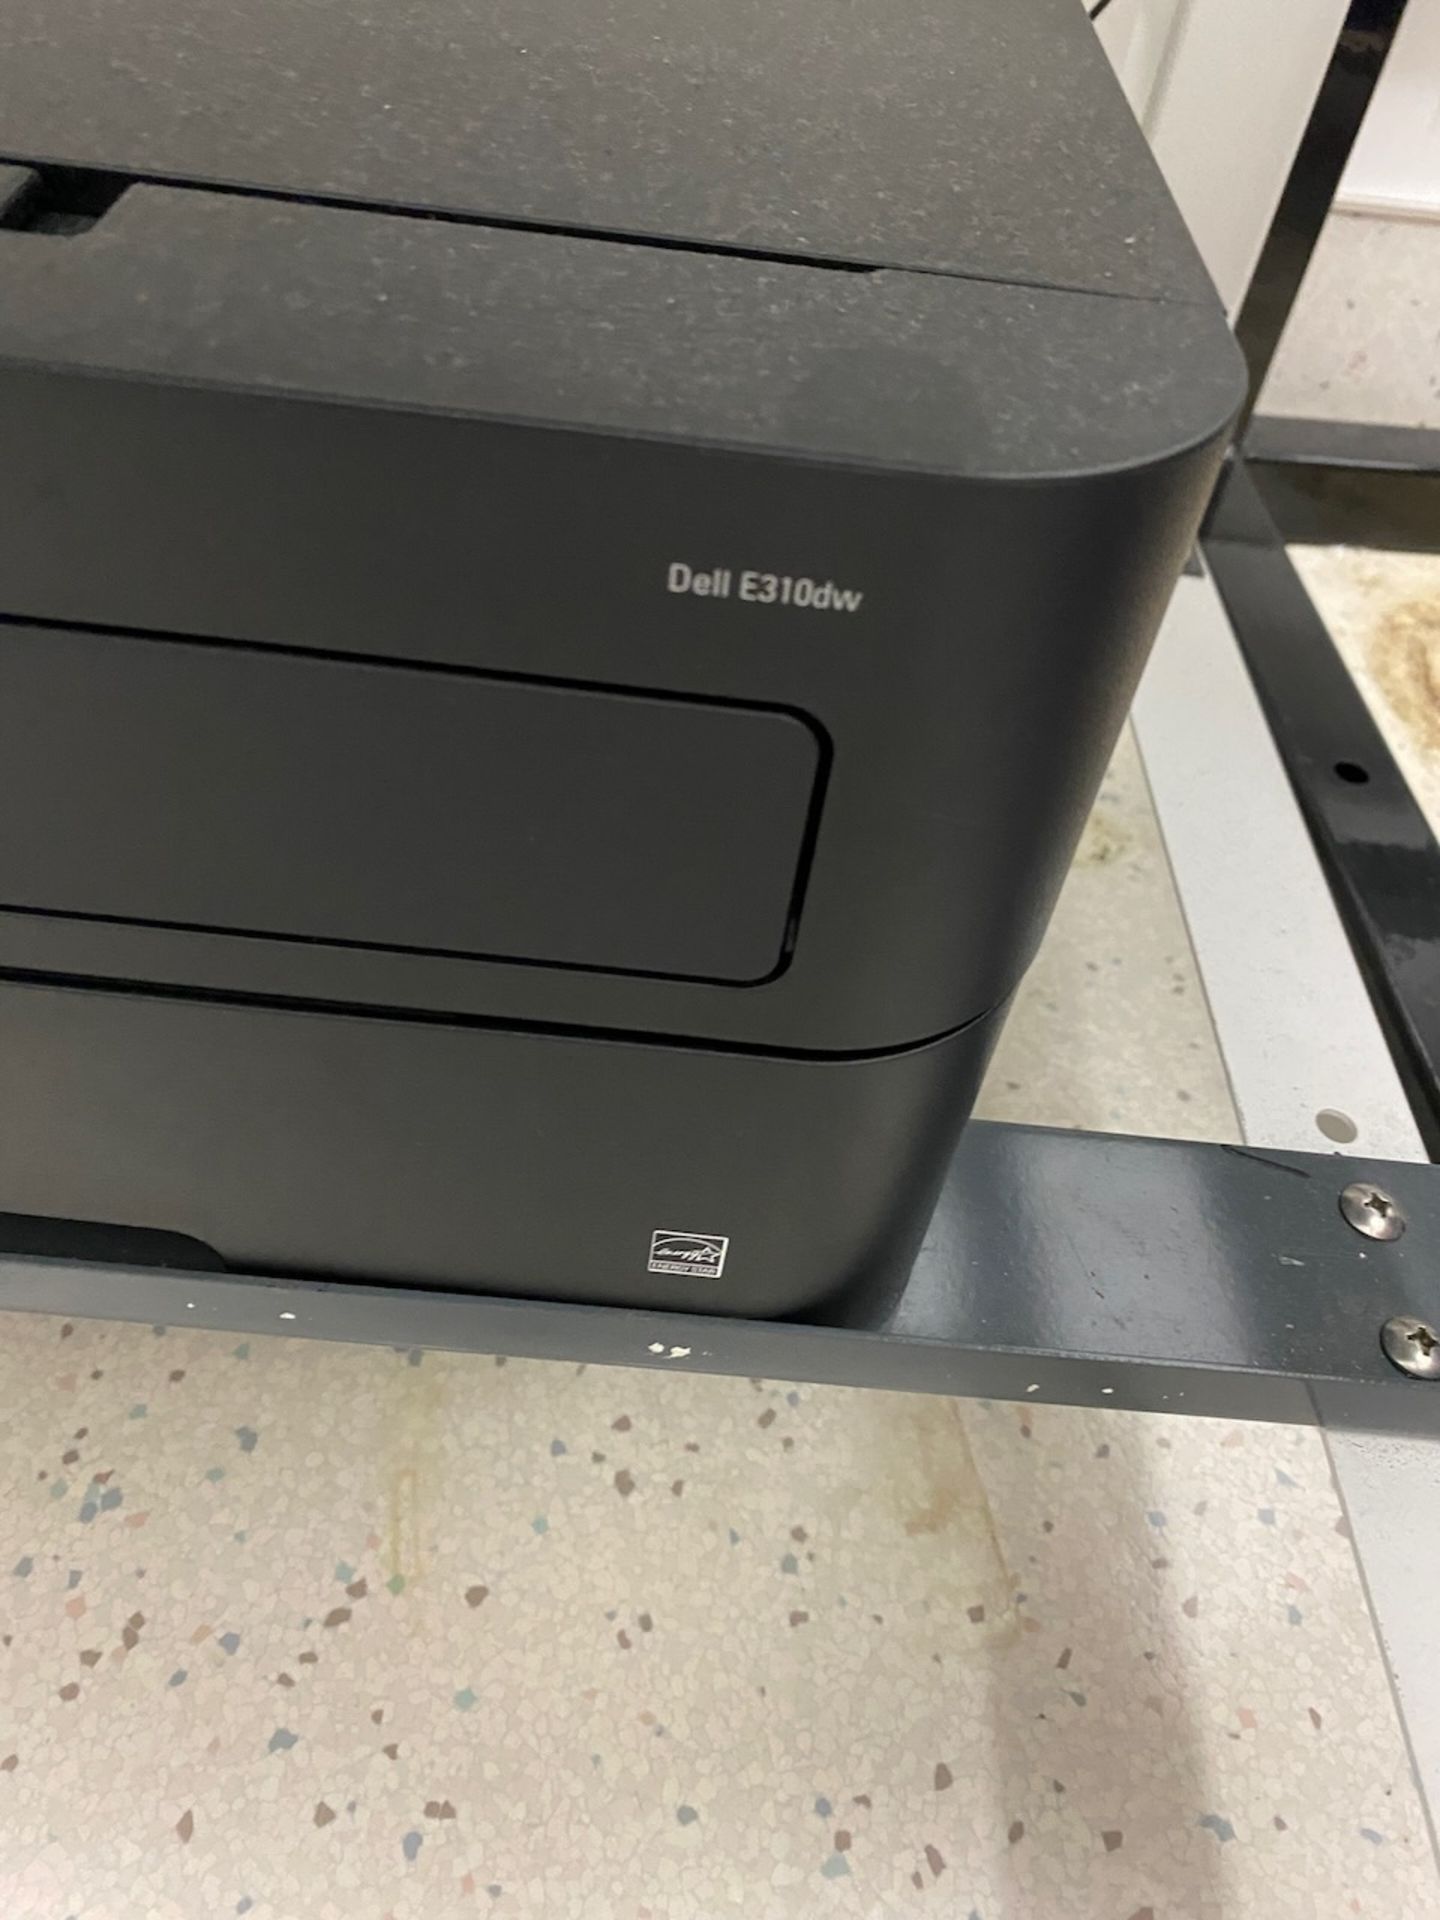 Dell E310dw Printer - Image 2 of 3